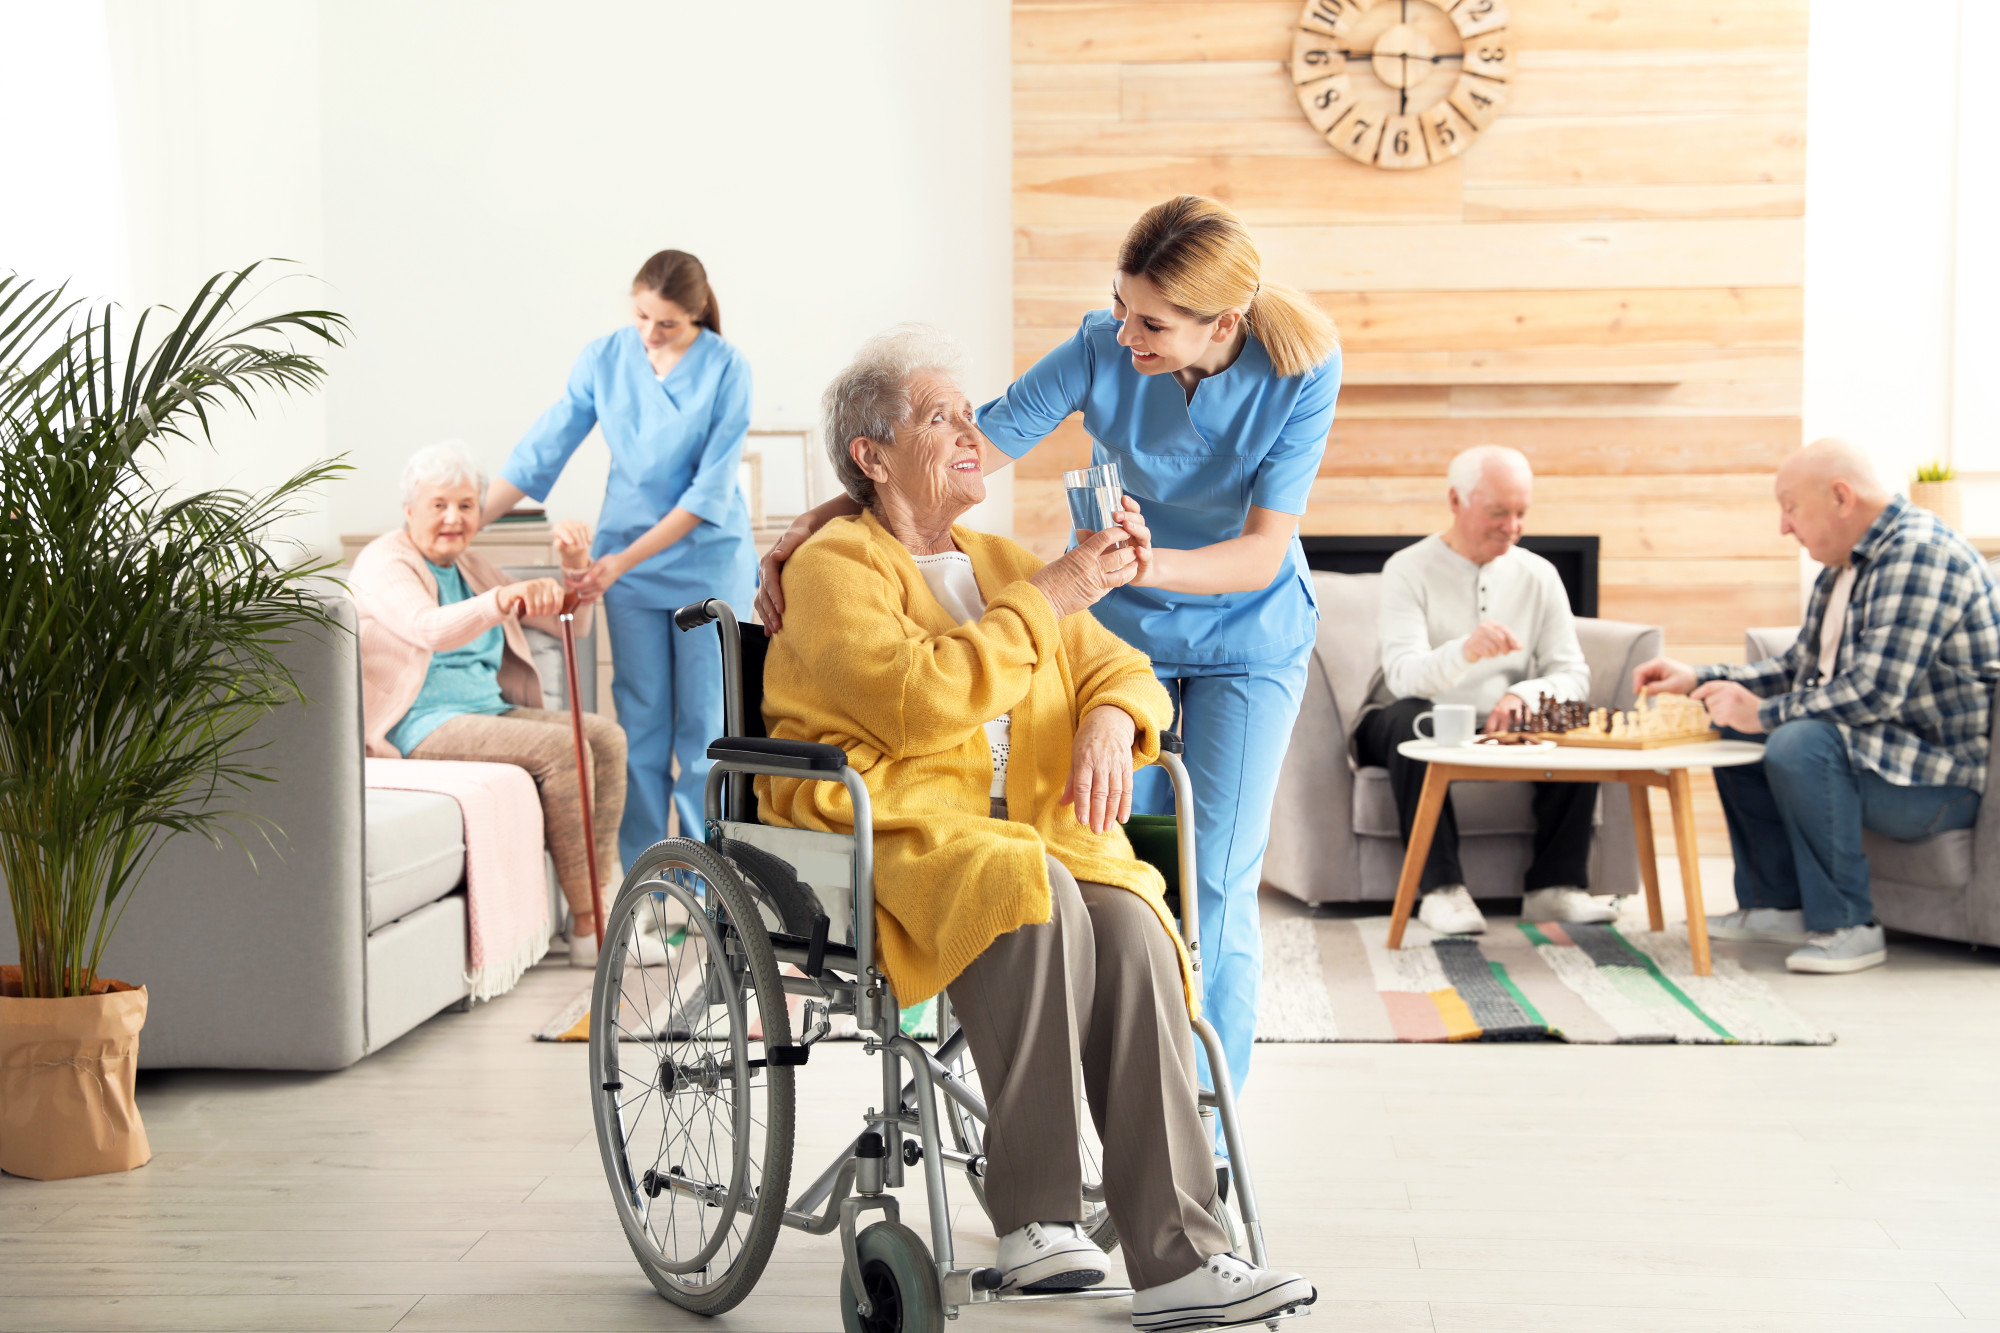 Extended care for seniors